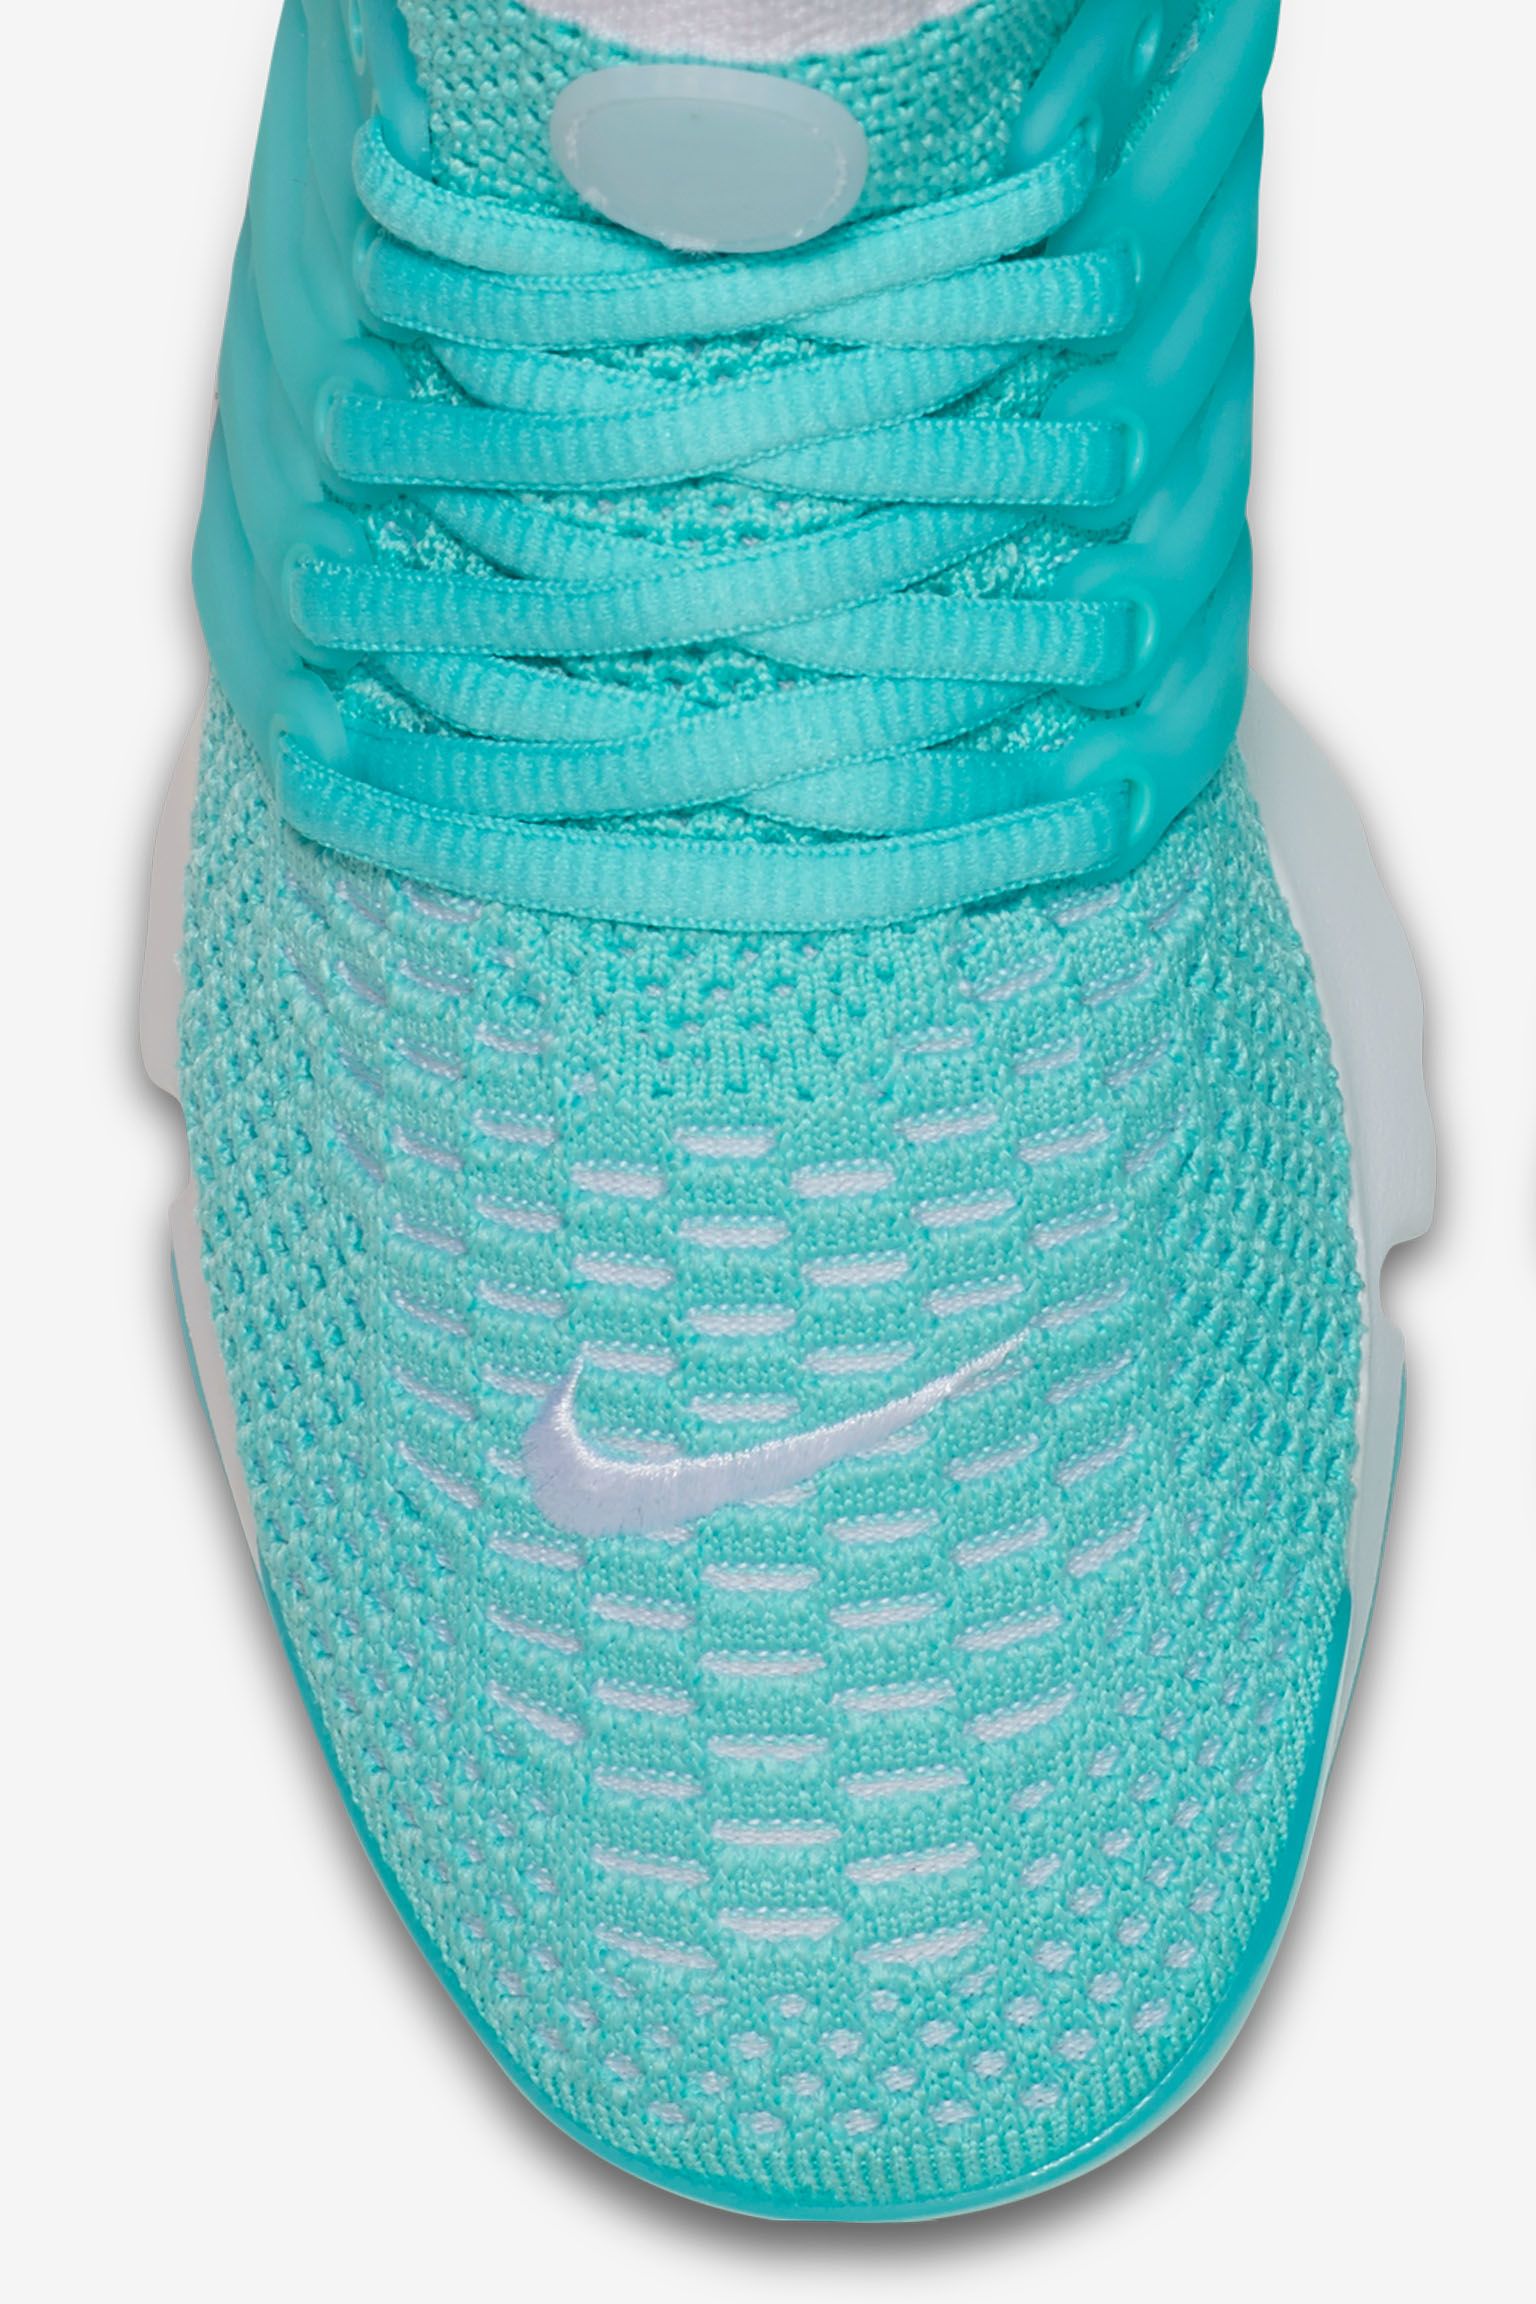 Women's Nike Presto Flyknit 'Hyper Turquoise' Release Date. Nike